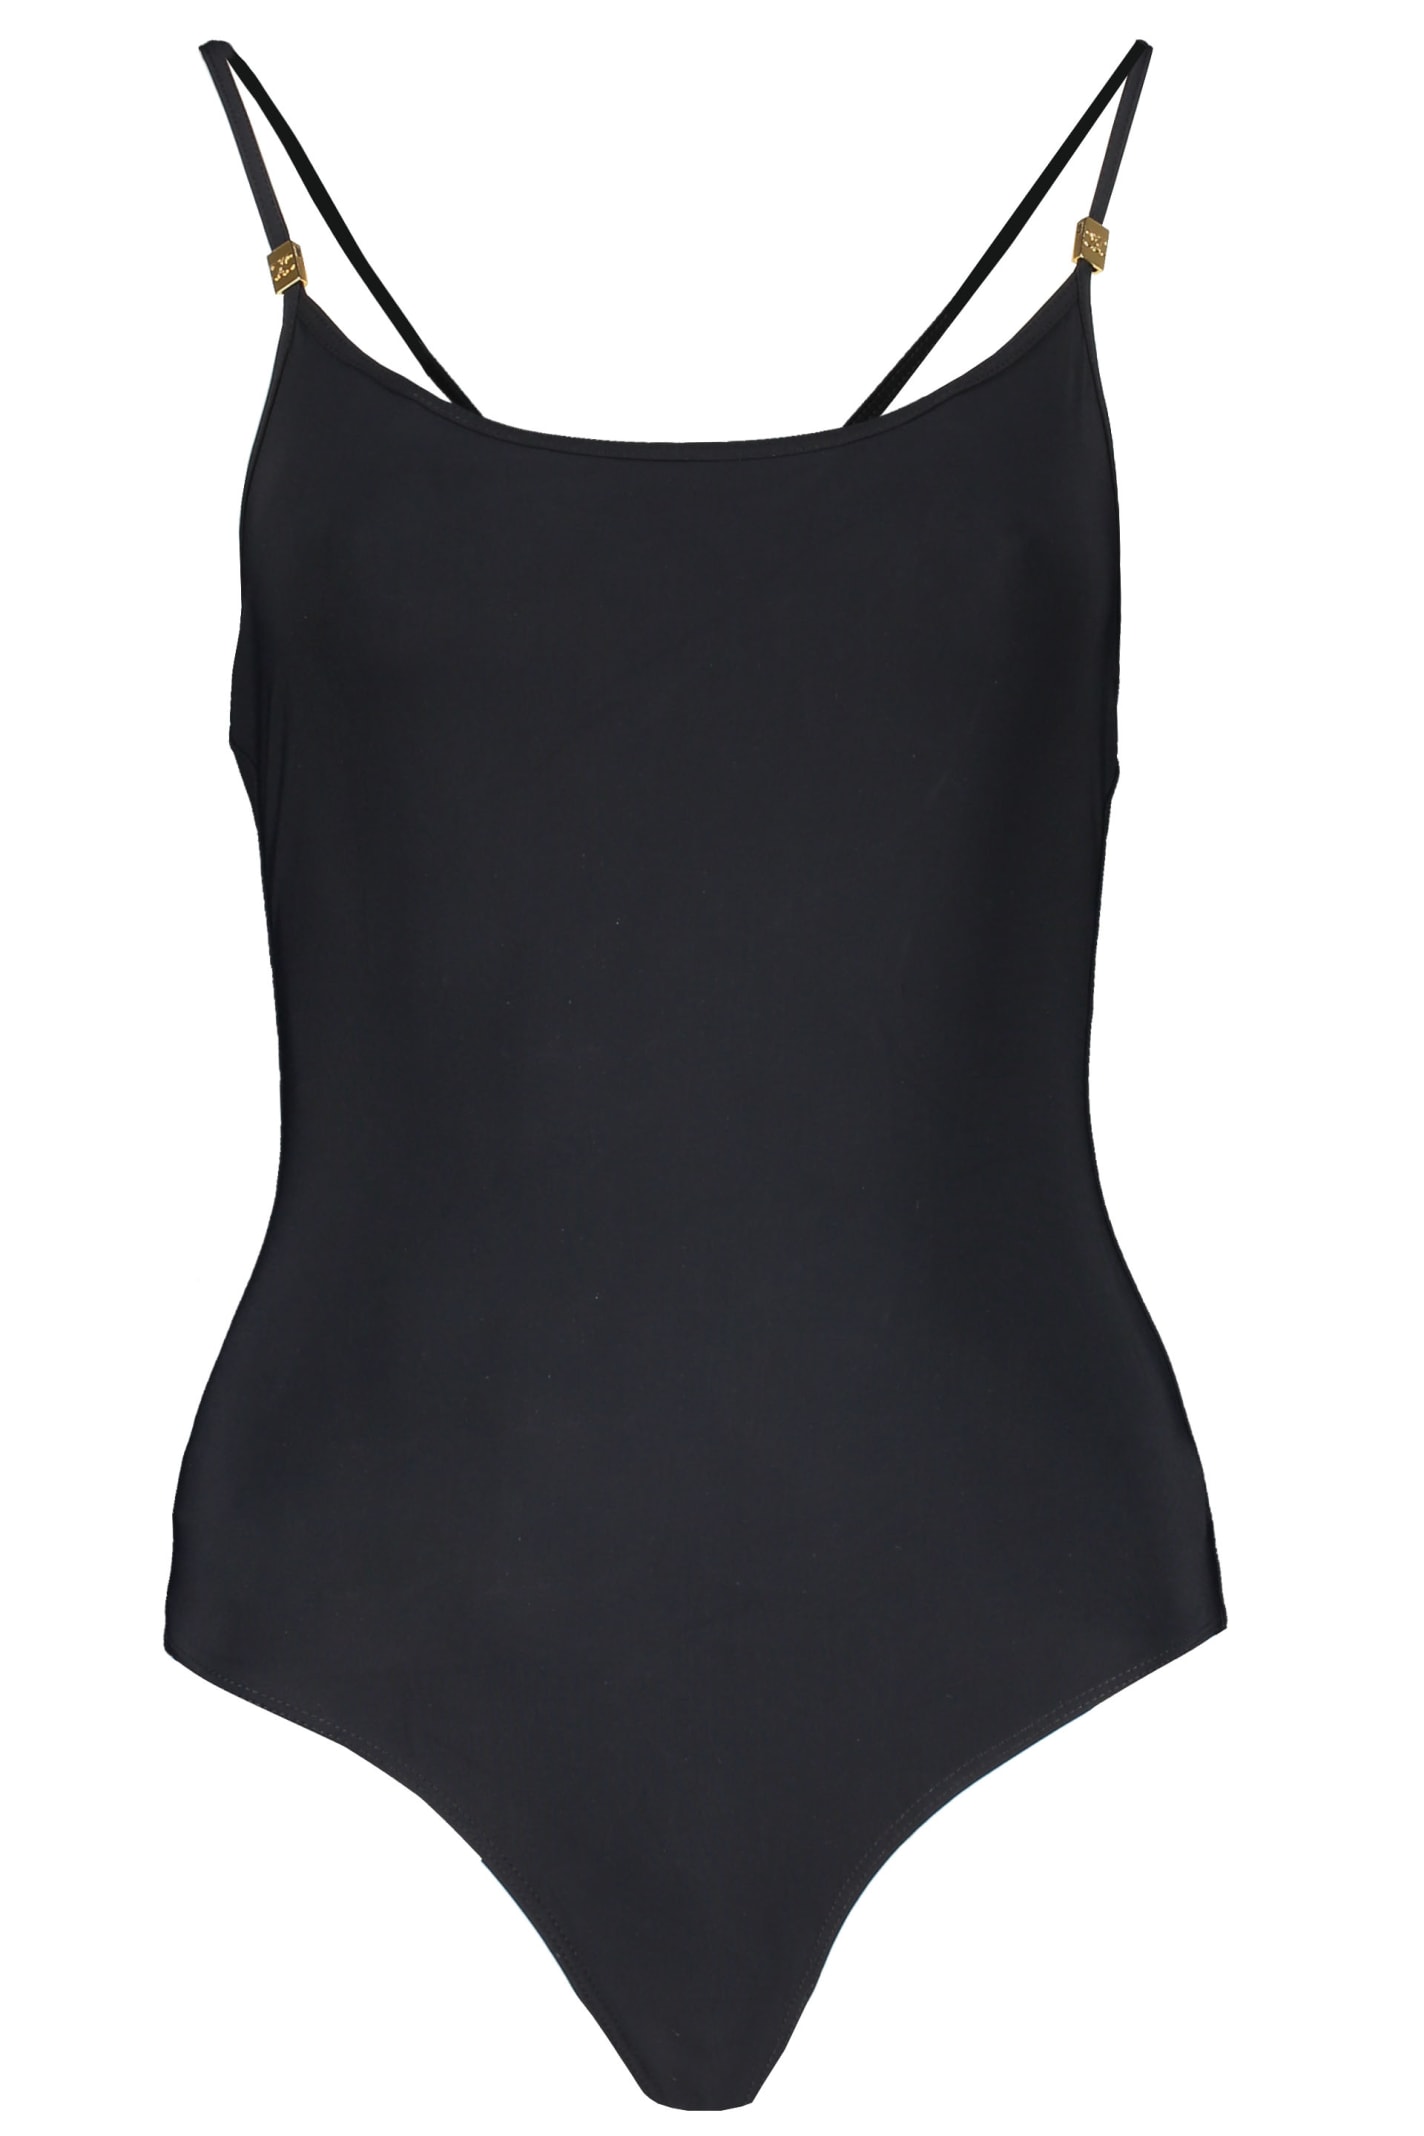 Celine One-piece Swimsuit In Black